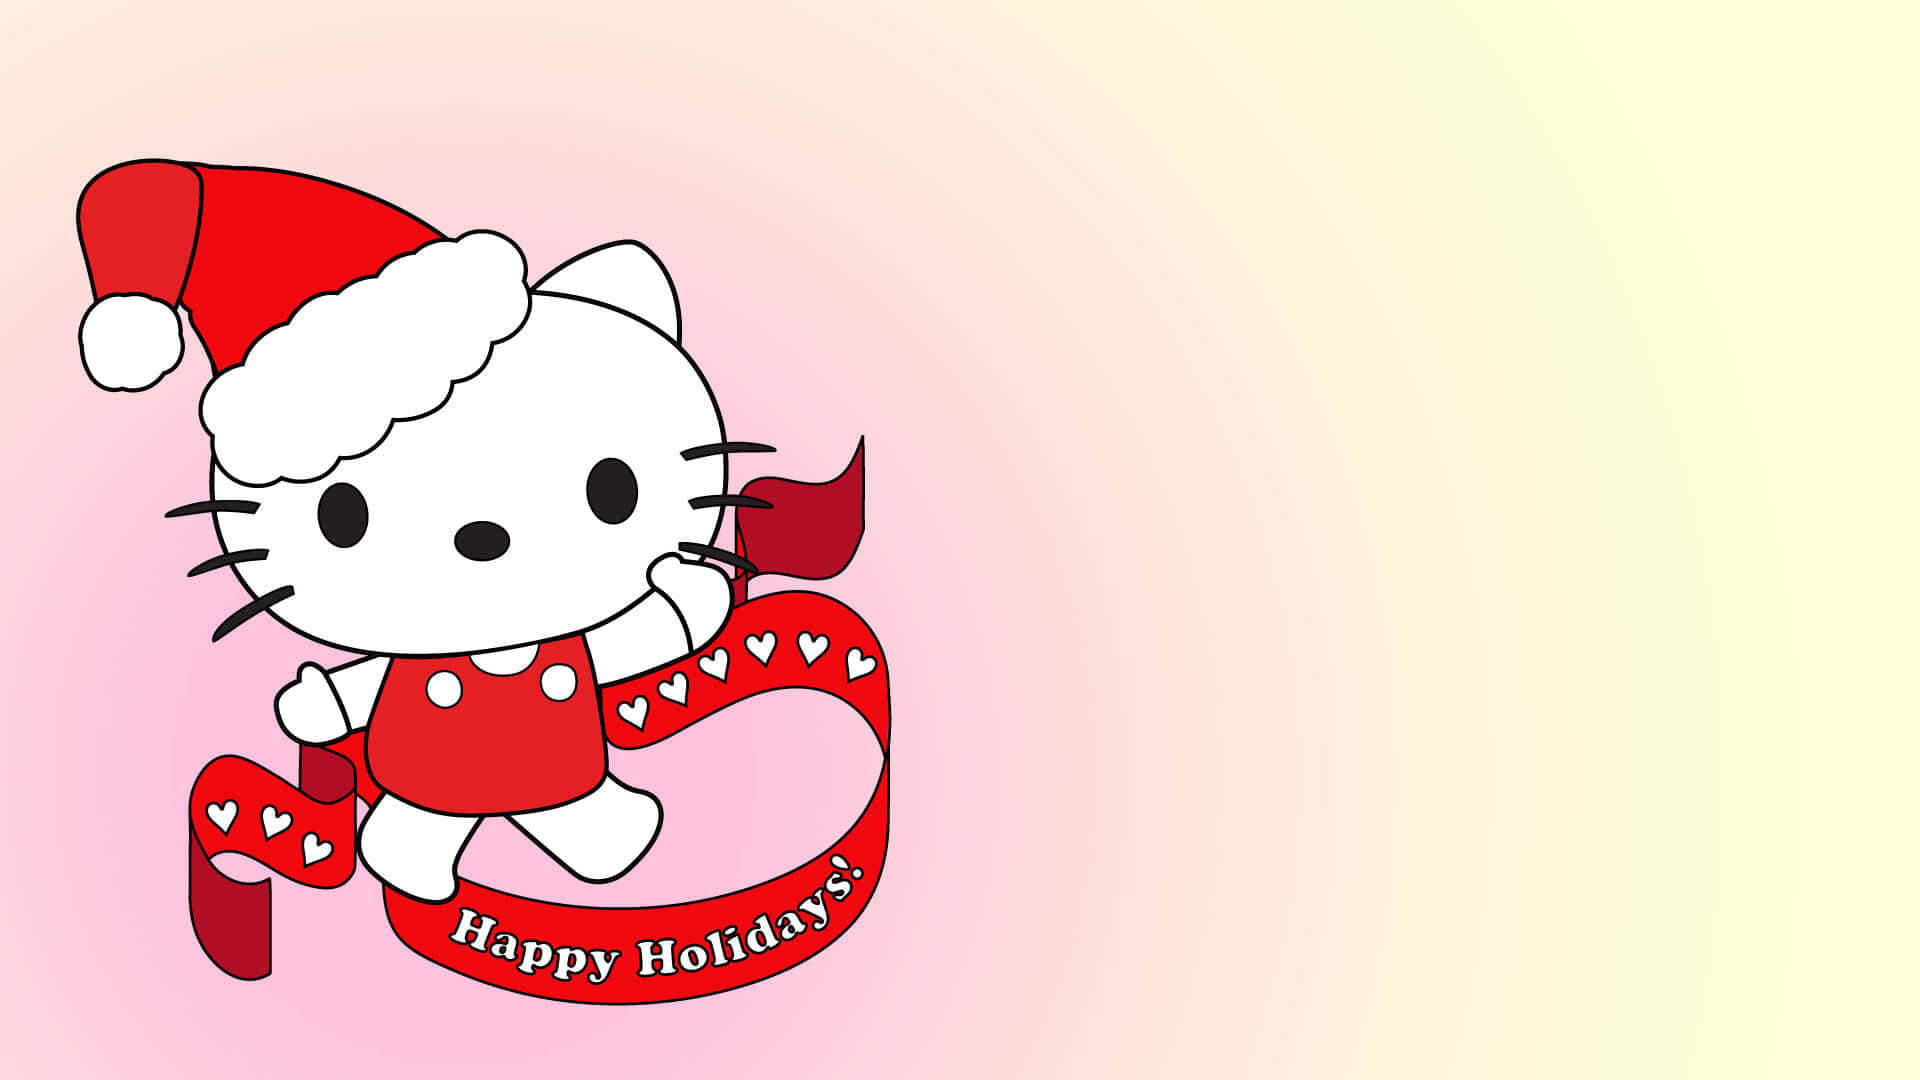 Fondode Póster De Hello Kitty Para Felices Festividades.